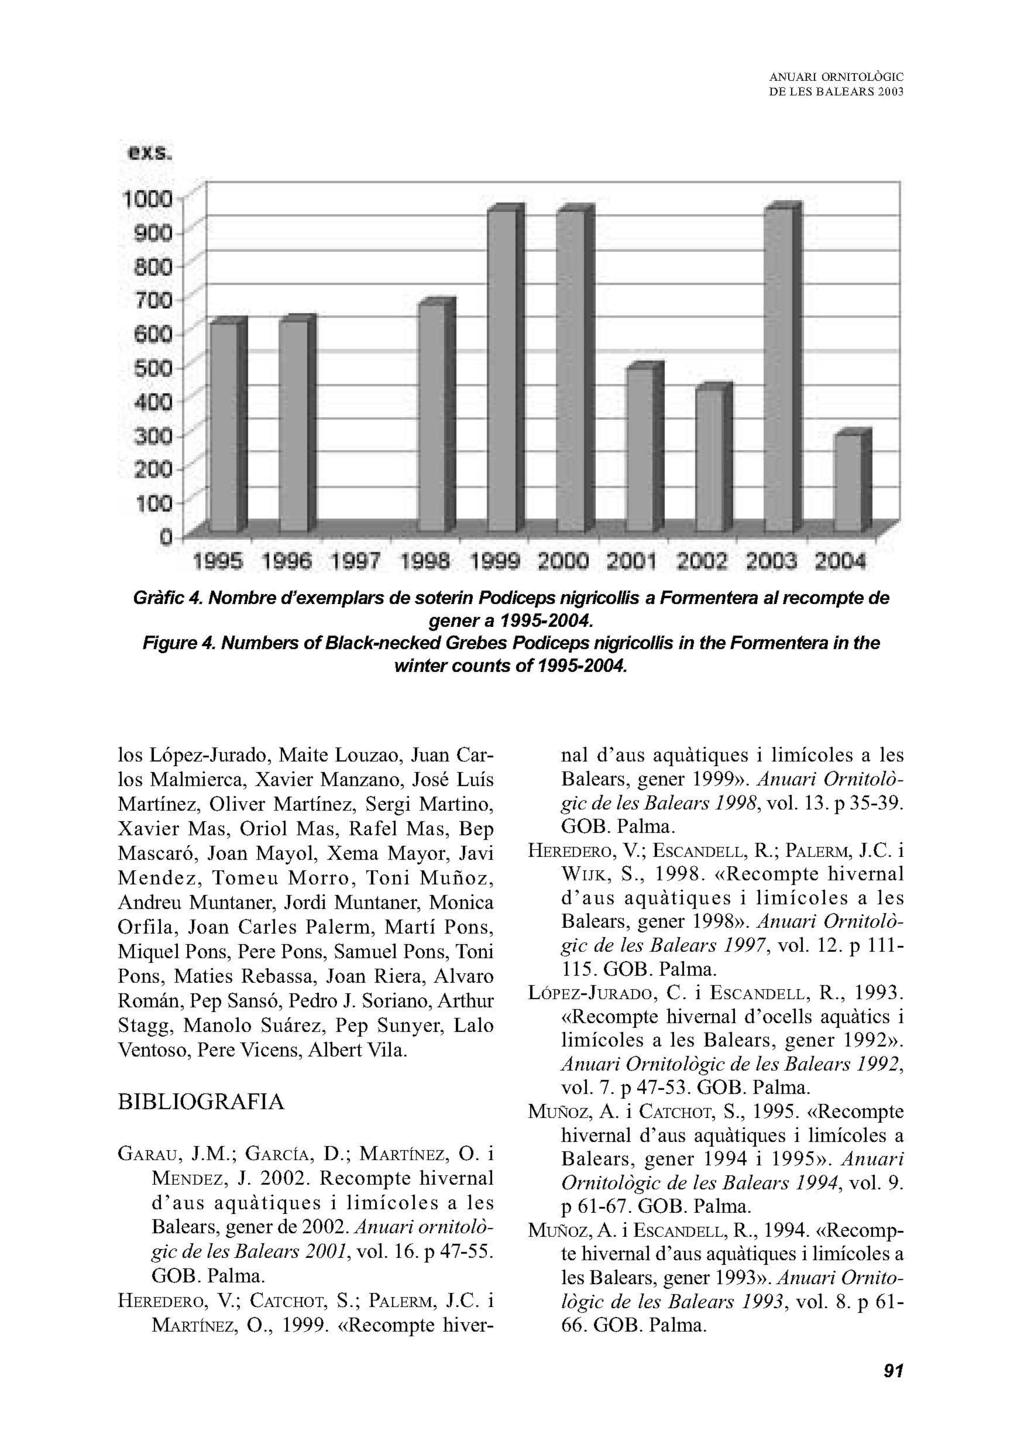 1995 1MG 19&7 1999 2ÜM 2001 2ÜD3 Gràfic 4. Nombre d'exemplars de soterin Podiceps nigricollis a Formentera al recompte de gener a 1995-2004. Figure 4.